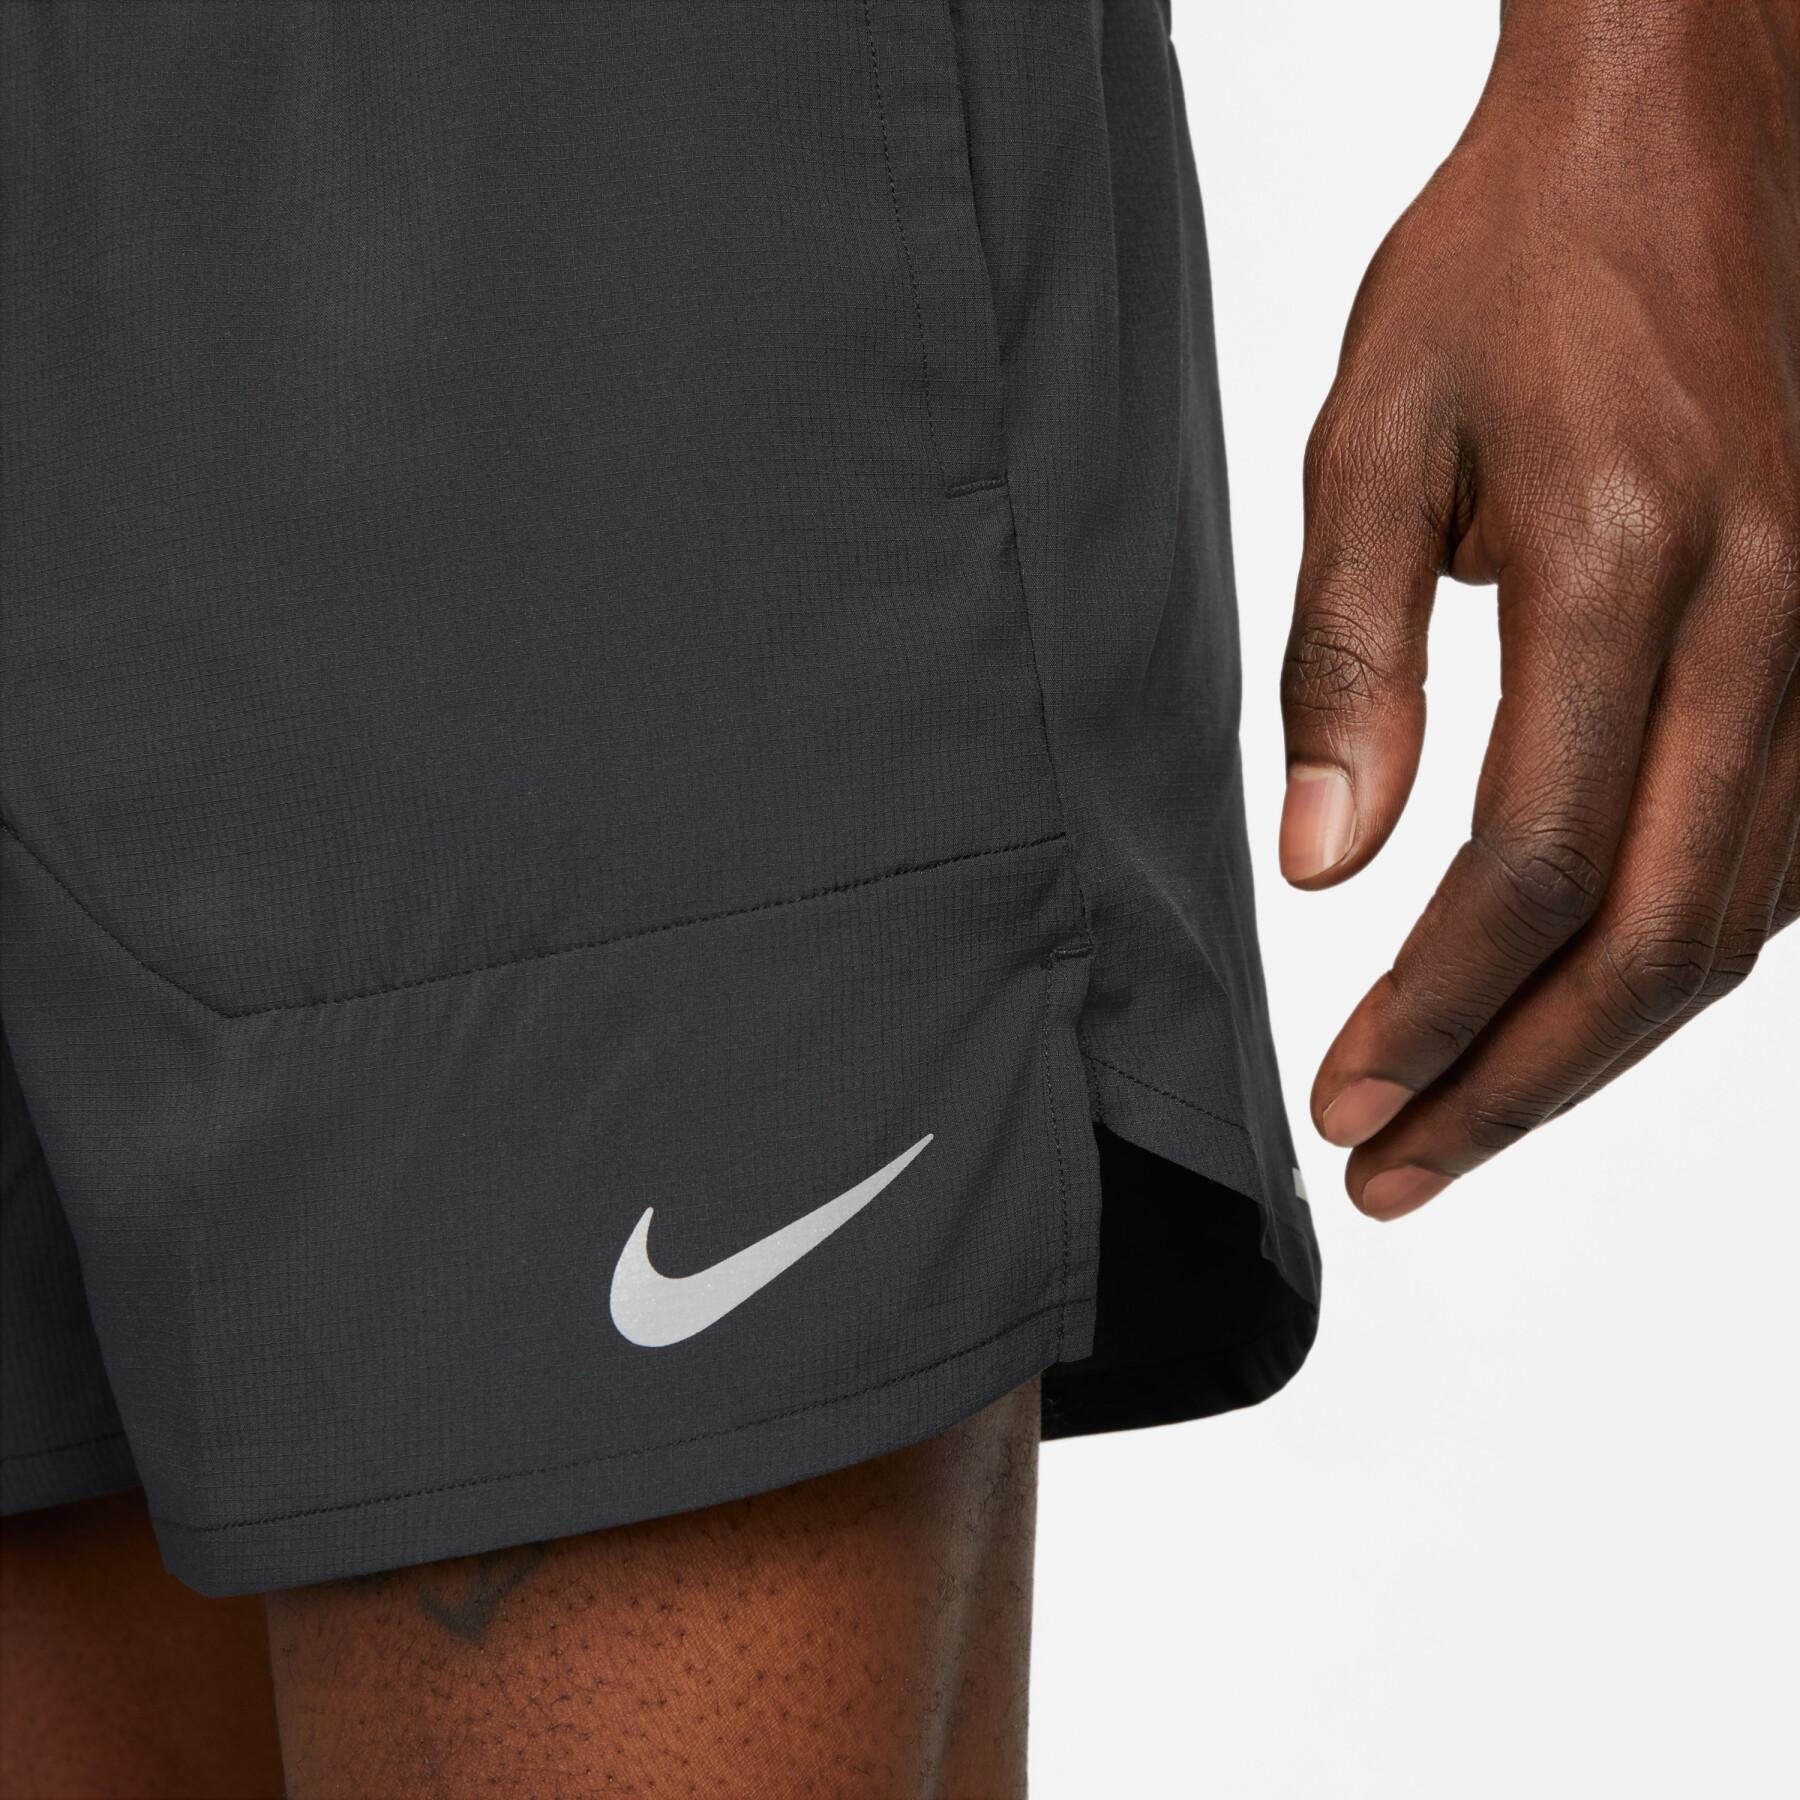 Pantalón corto Nike Dri-FIT Stride